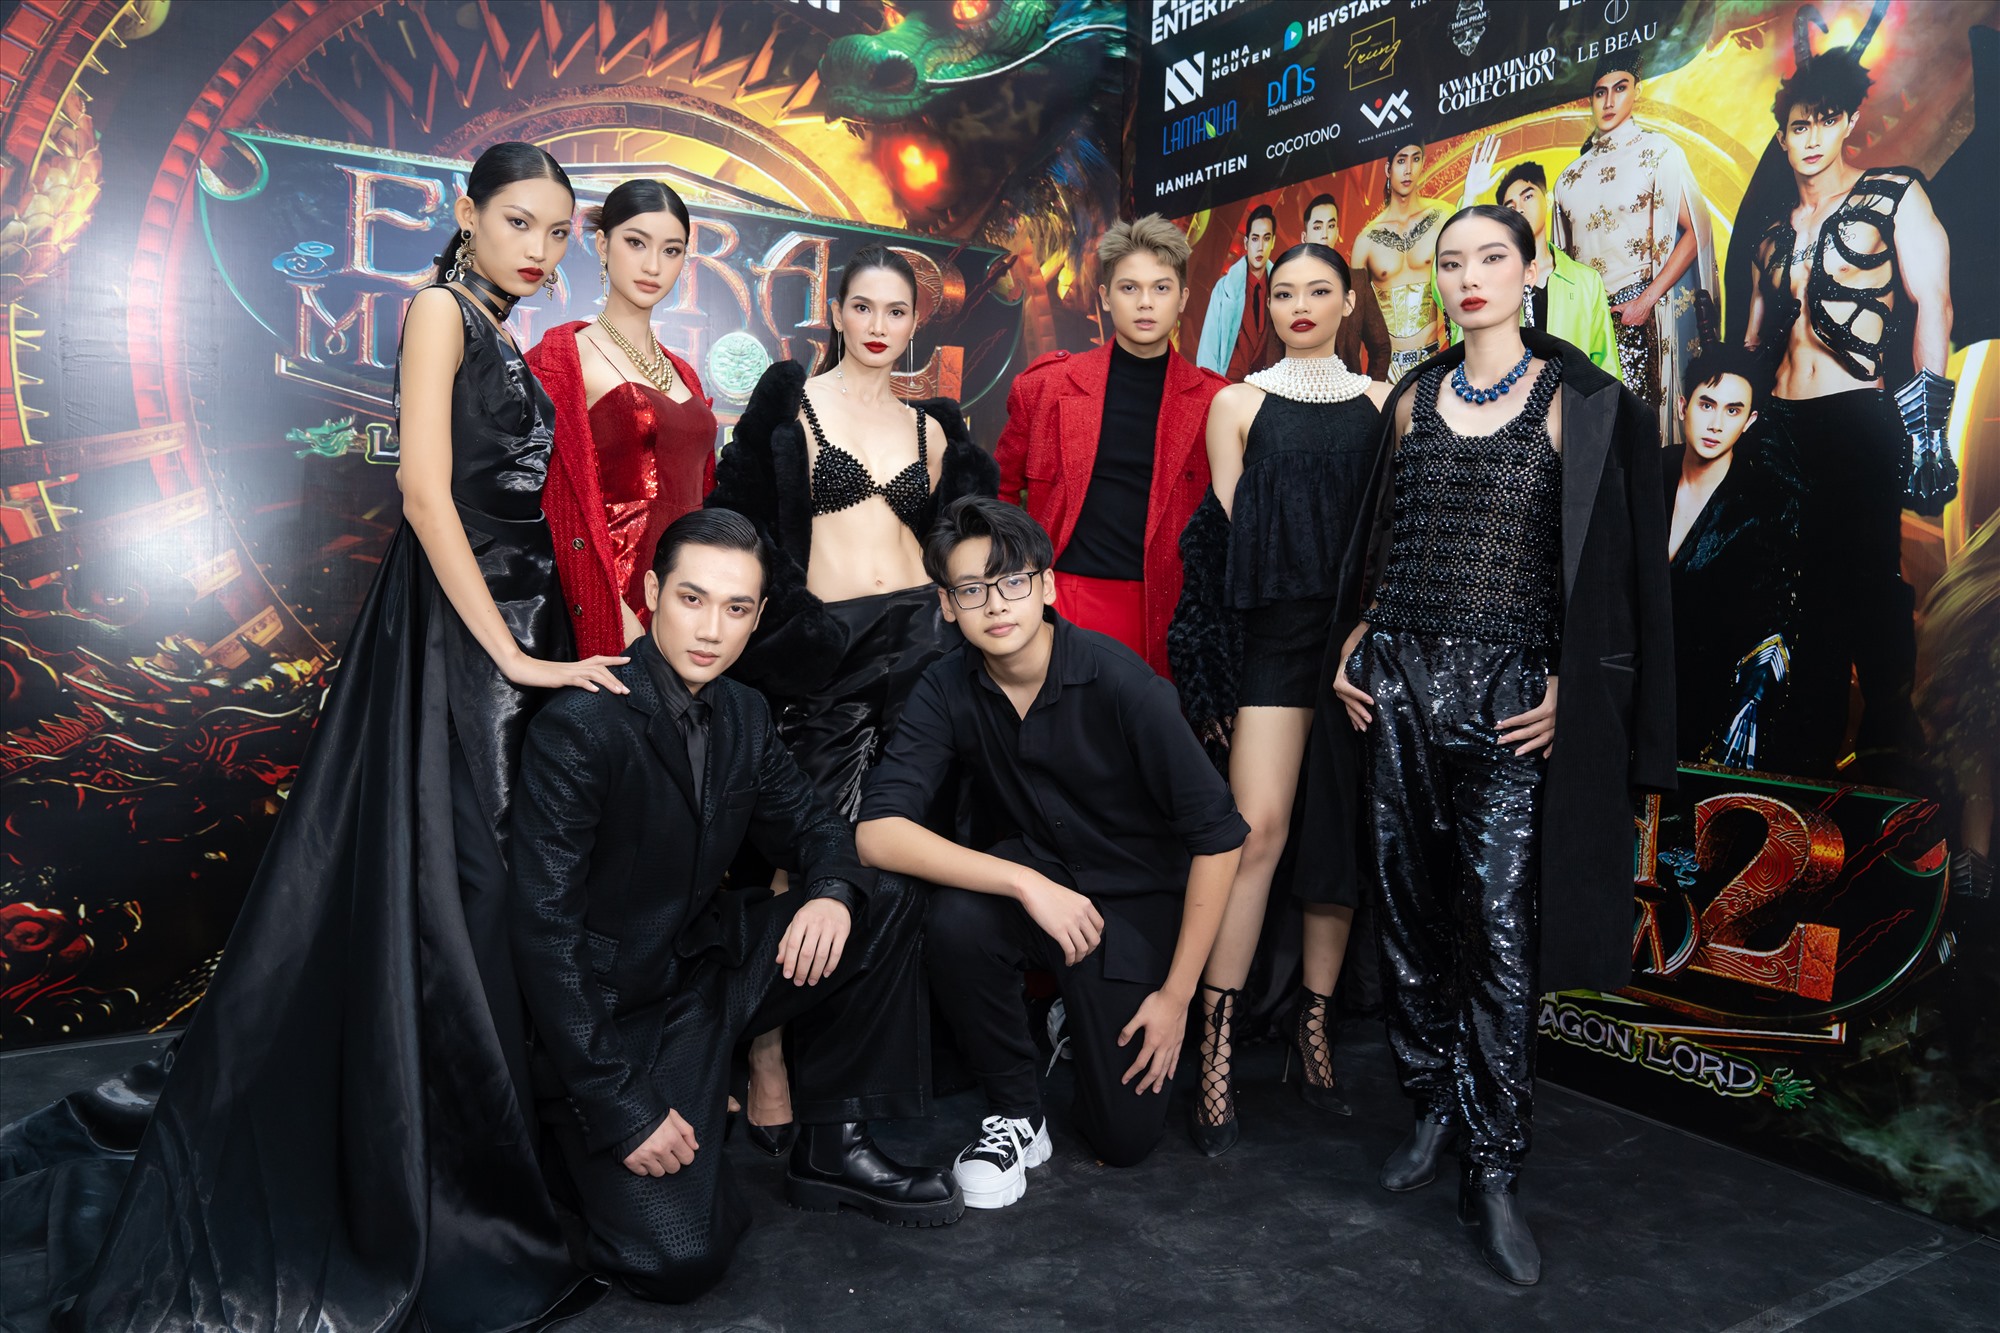 Show diễn có sự góp mặt của 3 nhà thiết kế Việt Nam là Vương Khang, Hà Nhật Tiến, Ngô Mạnh Đông Đông cùng 2 nhà thiết kế đến từ Hàn Quốc và Nhật Bản. 